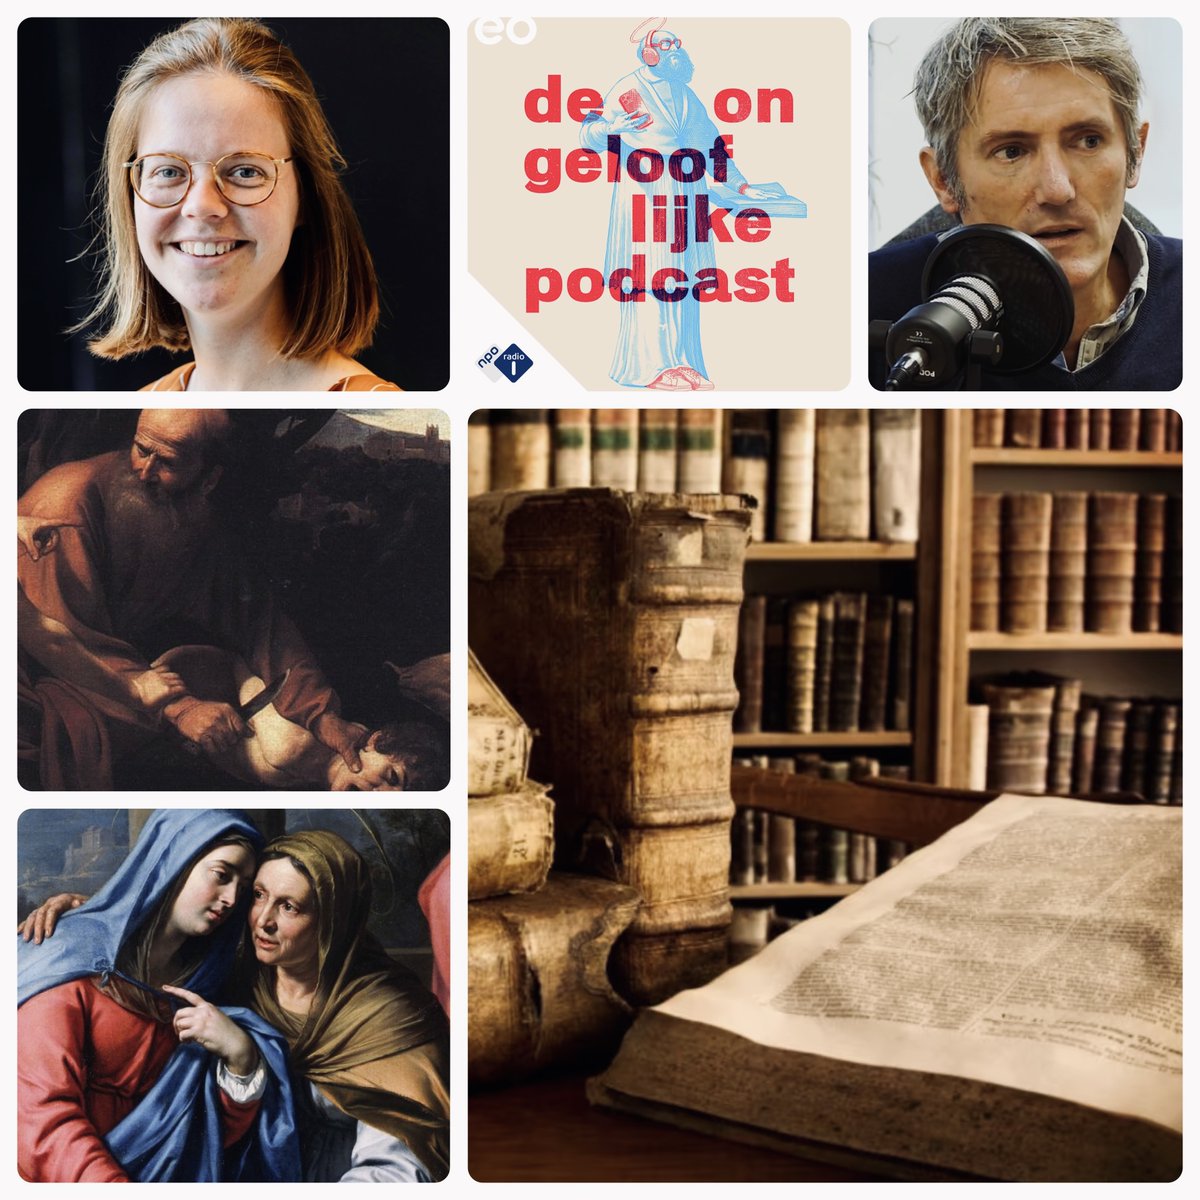 🎙️Nieuwe Ongelooflijke Podcast!🎙️

Over hoe de Bijbel Nederland veranderd heeft. 
Want of je nou gelovig bent of niet, de invloed van de Bijbel is immens.

Met @RenskeHoff die een recordaantal mythes over de Bijbel ontkracht en natuurlijk @StefanPaas!

👉 plinkhq.com/i/1458702219?t…